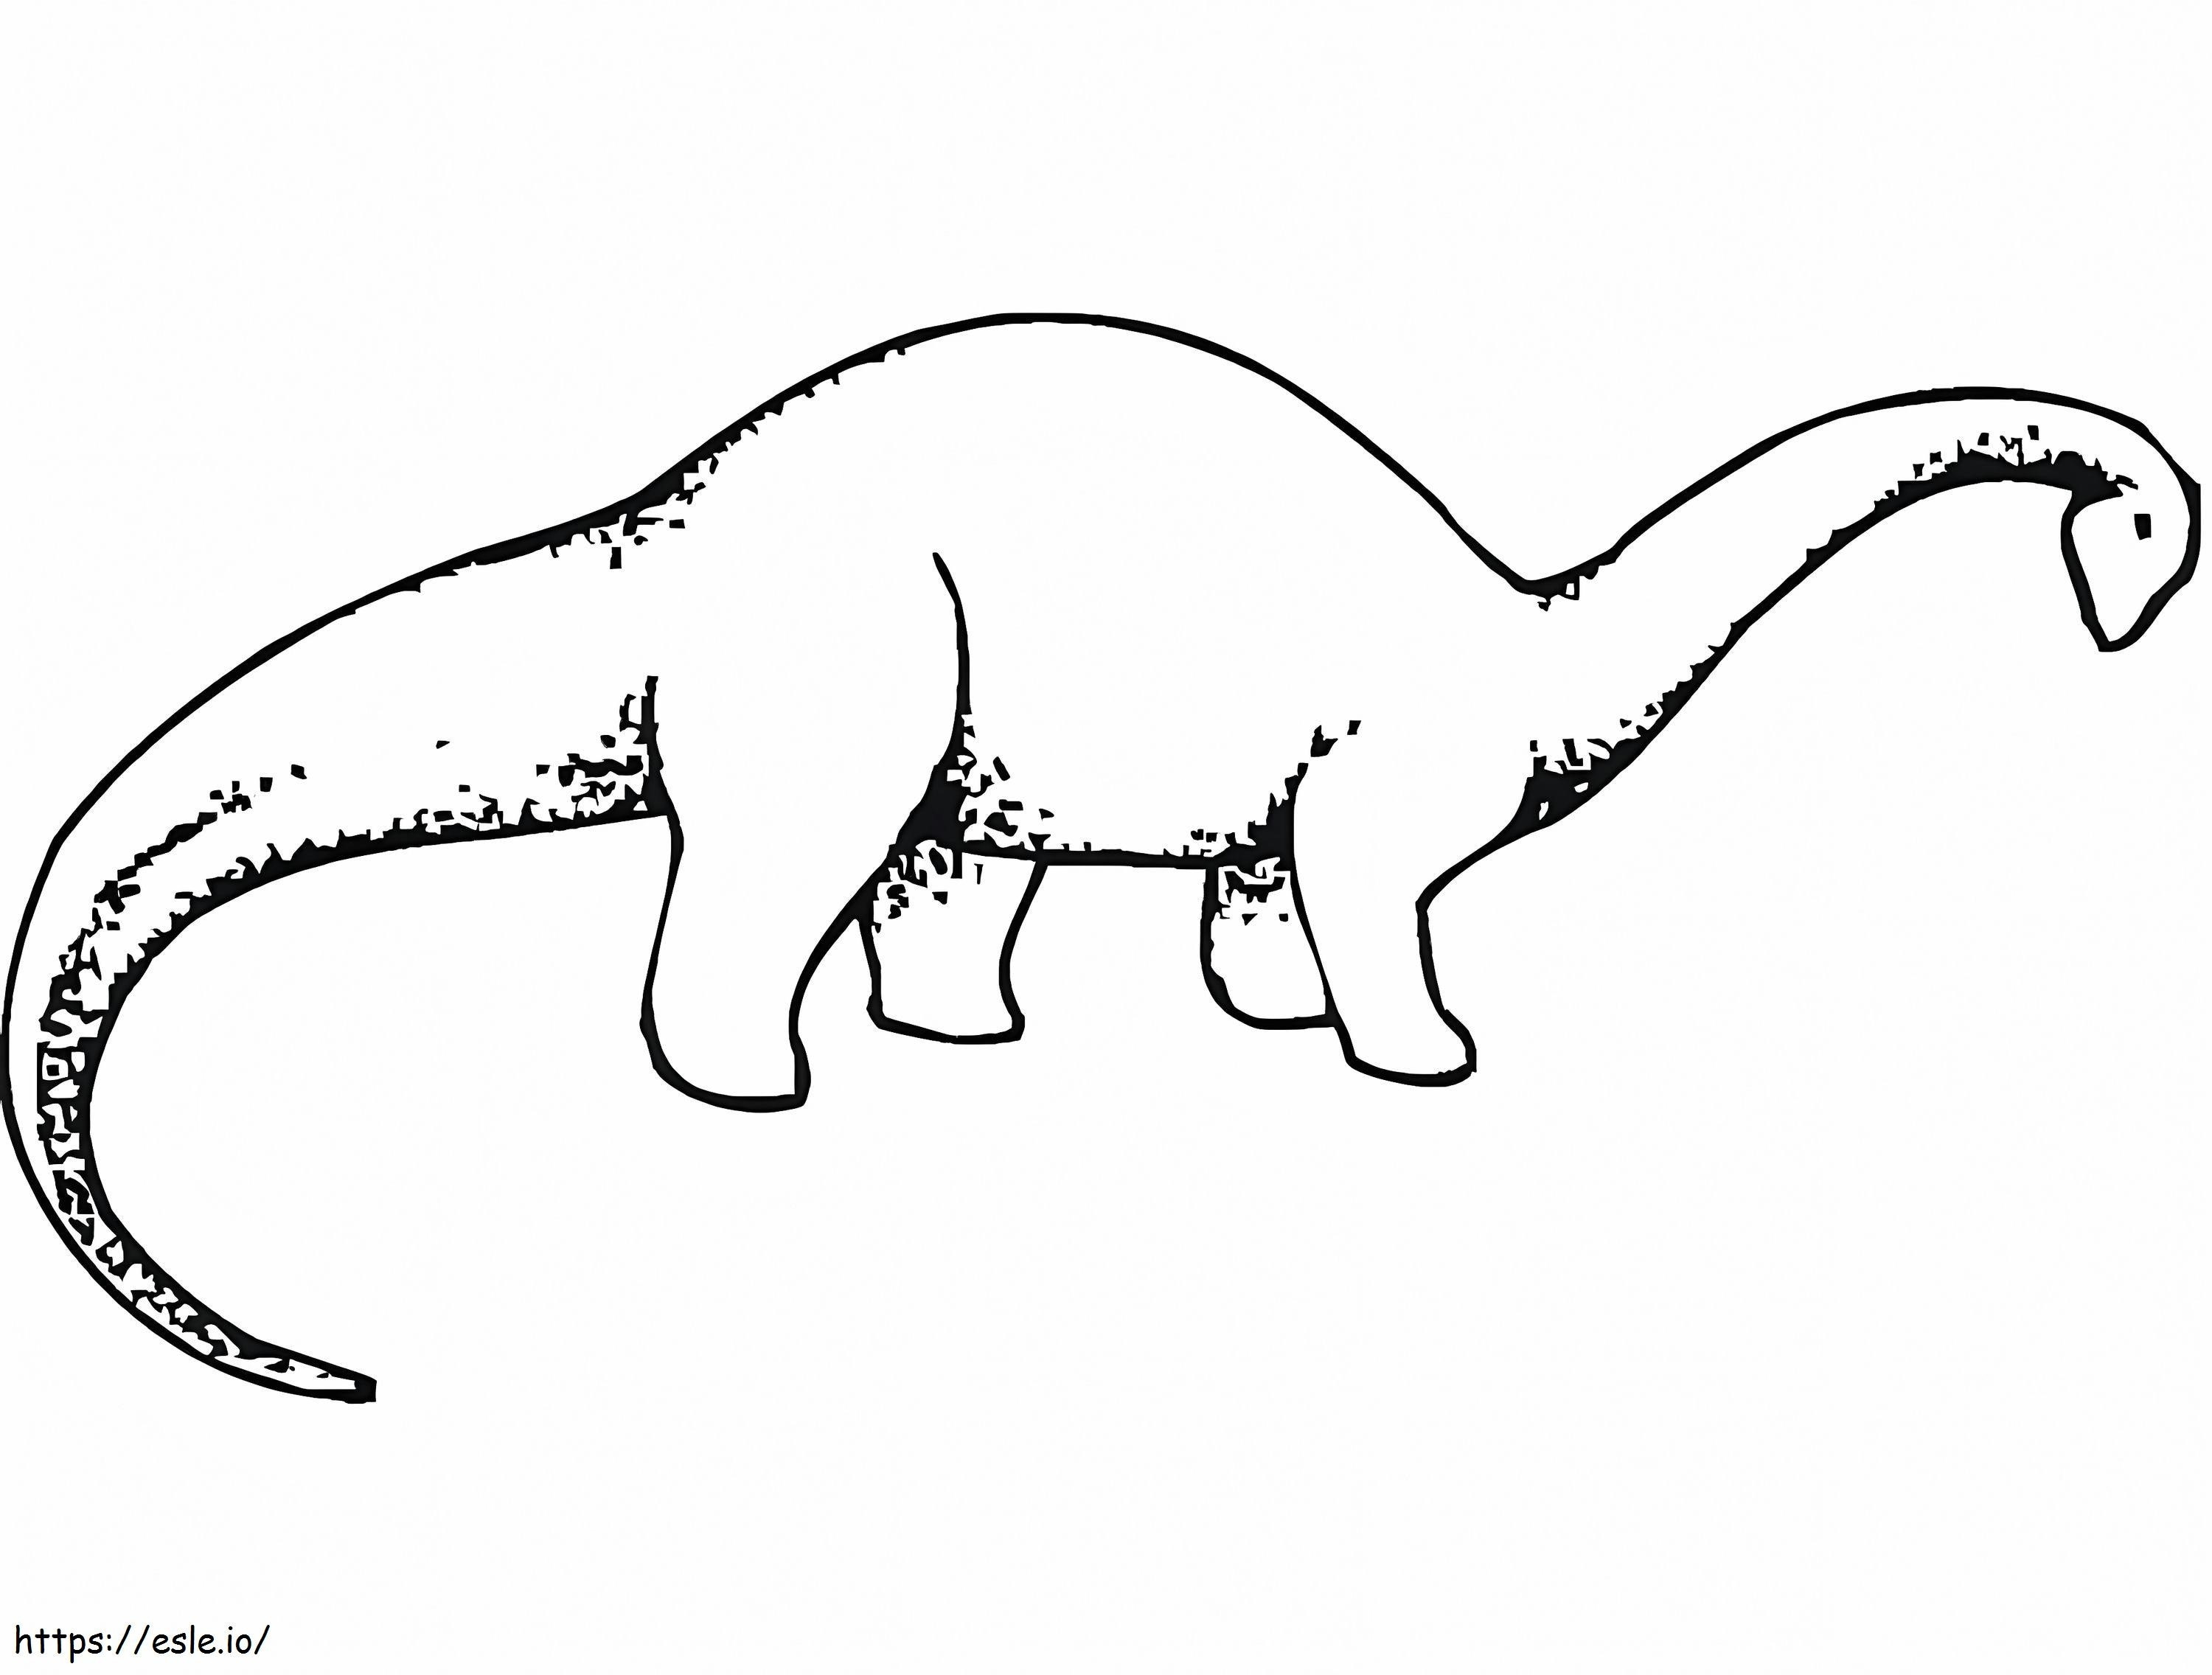 Brachiosauro 1 da colorare